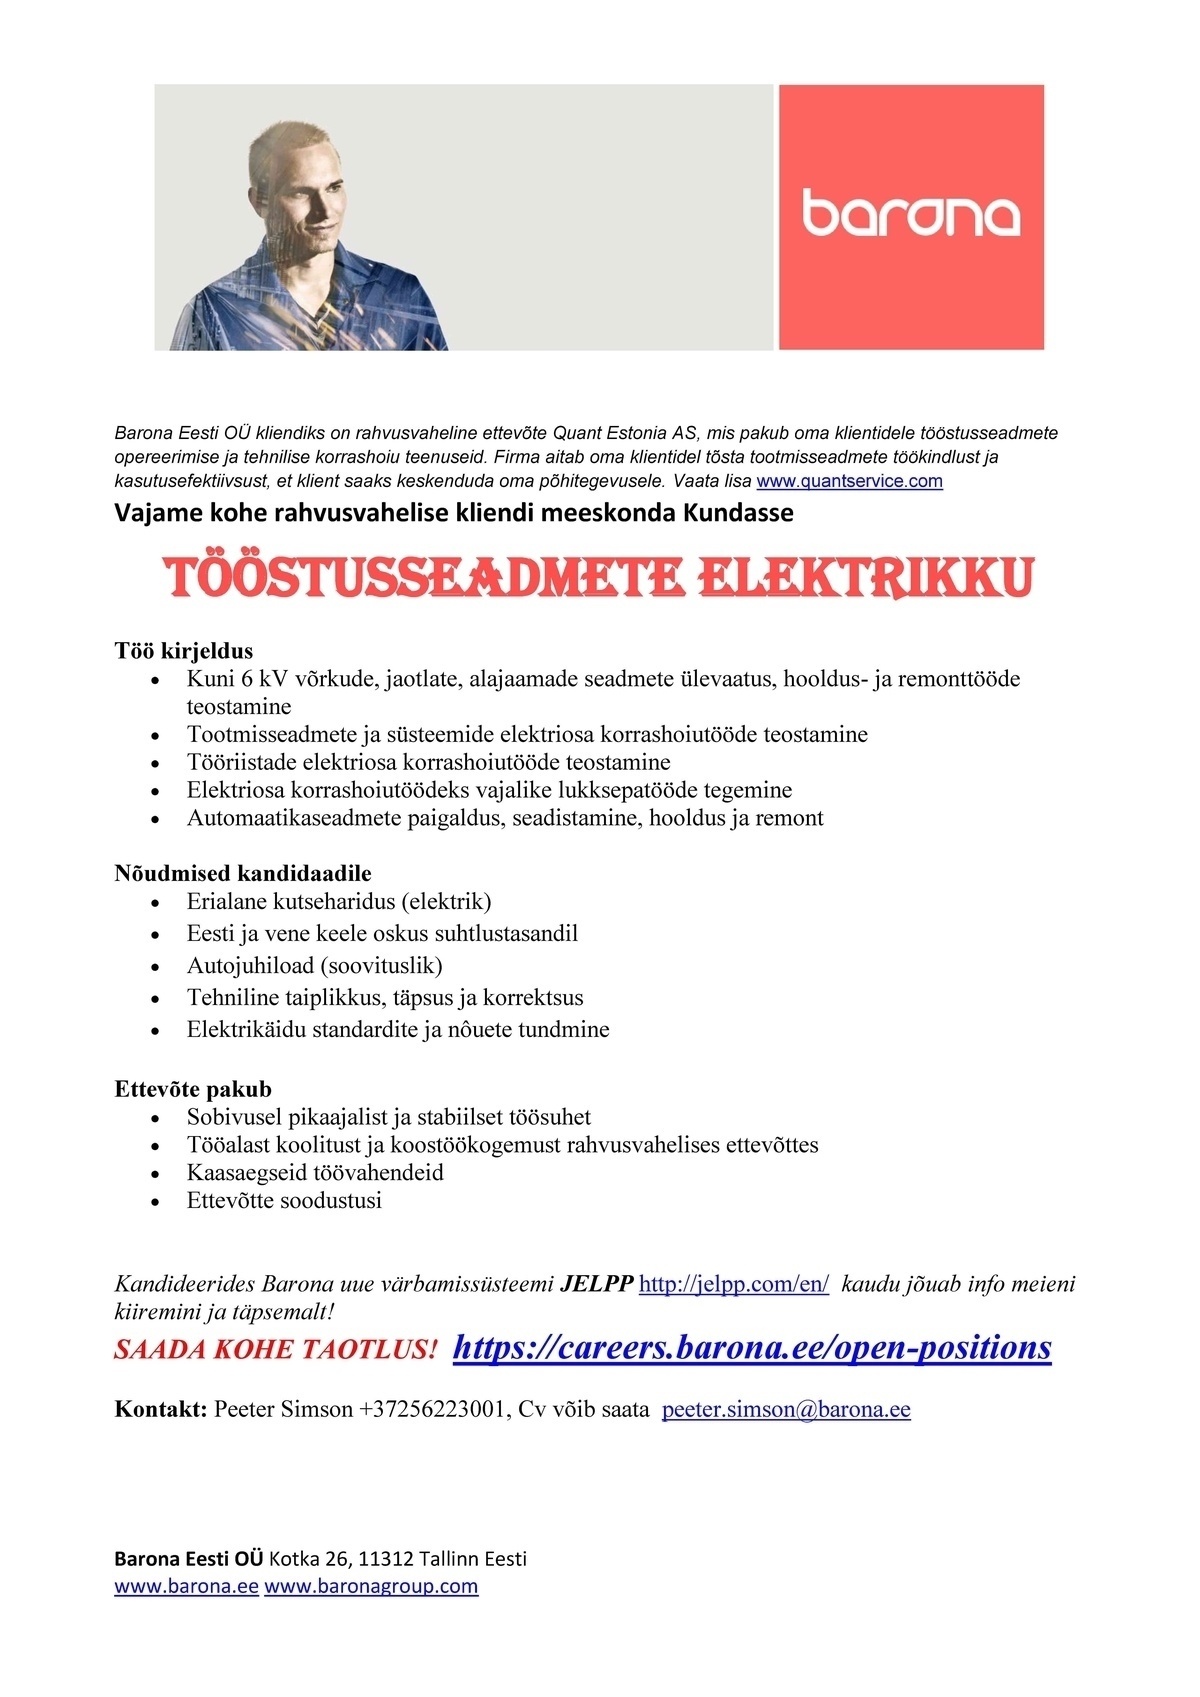 Barona Eesti OÜ Kohe tööstusseadmete elektrik, Kundasse! 